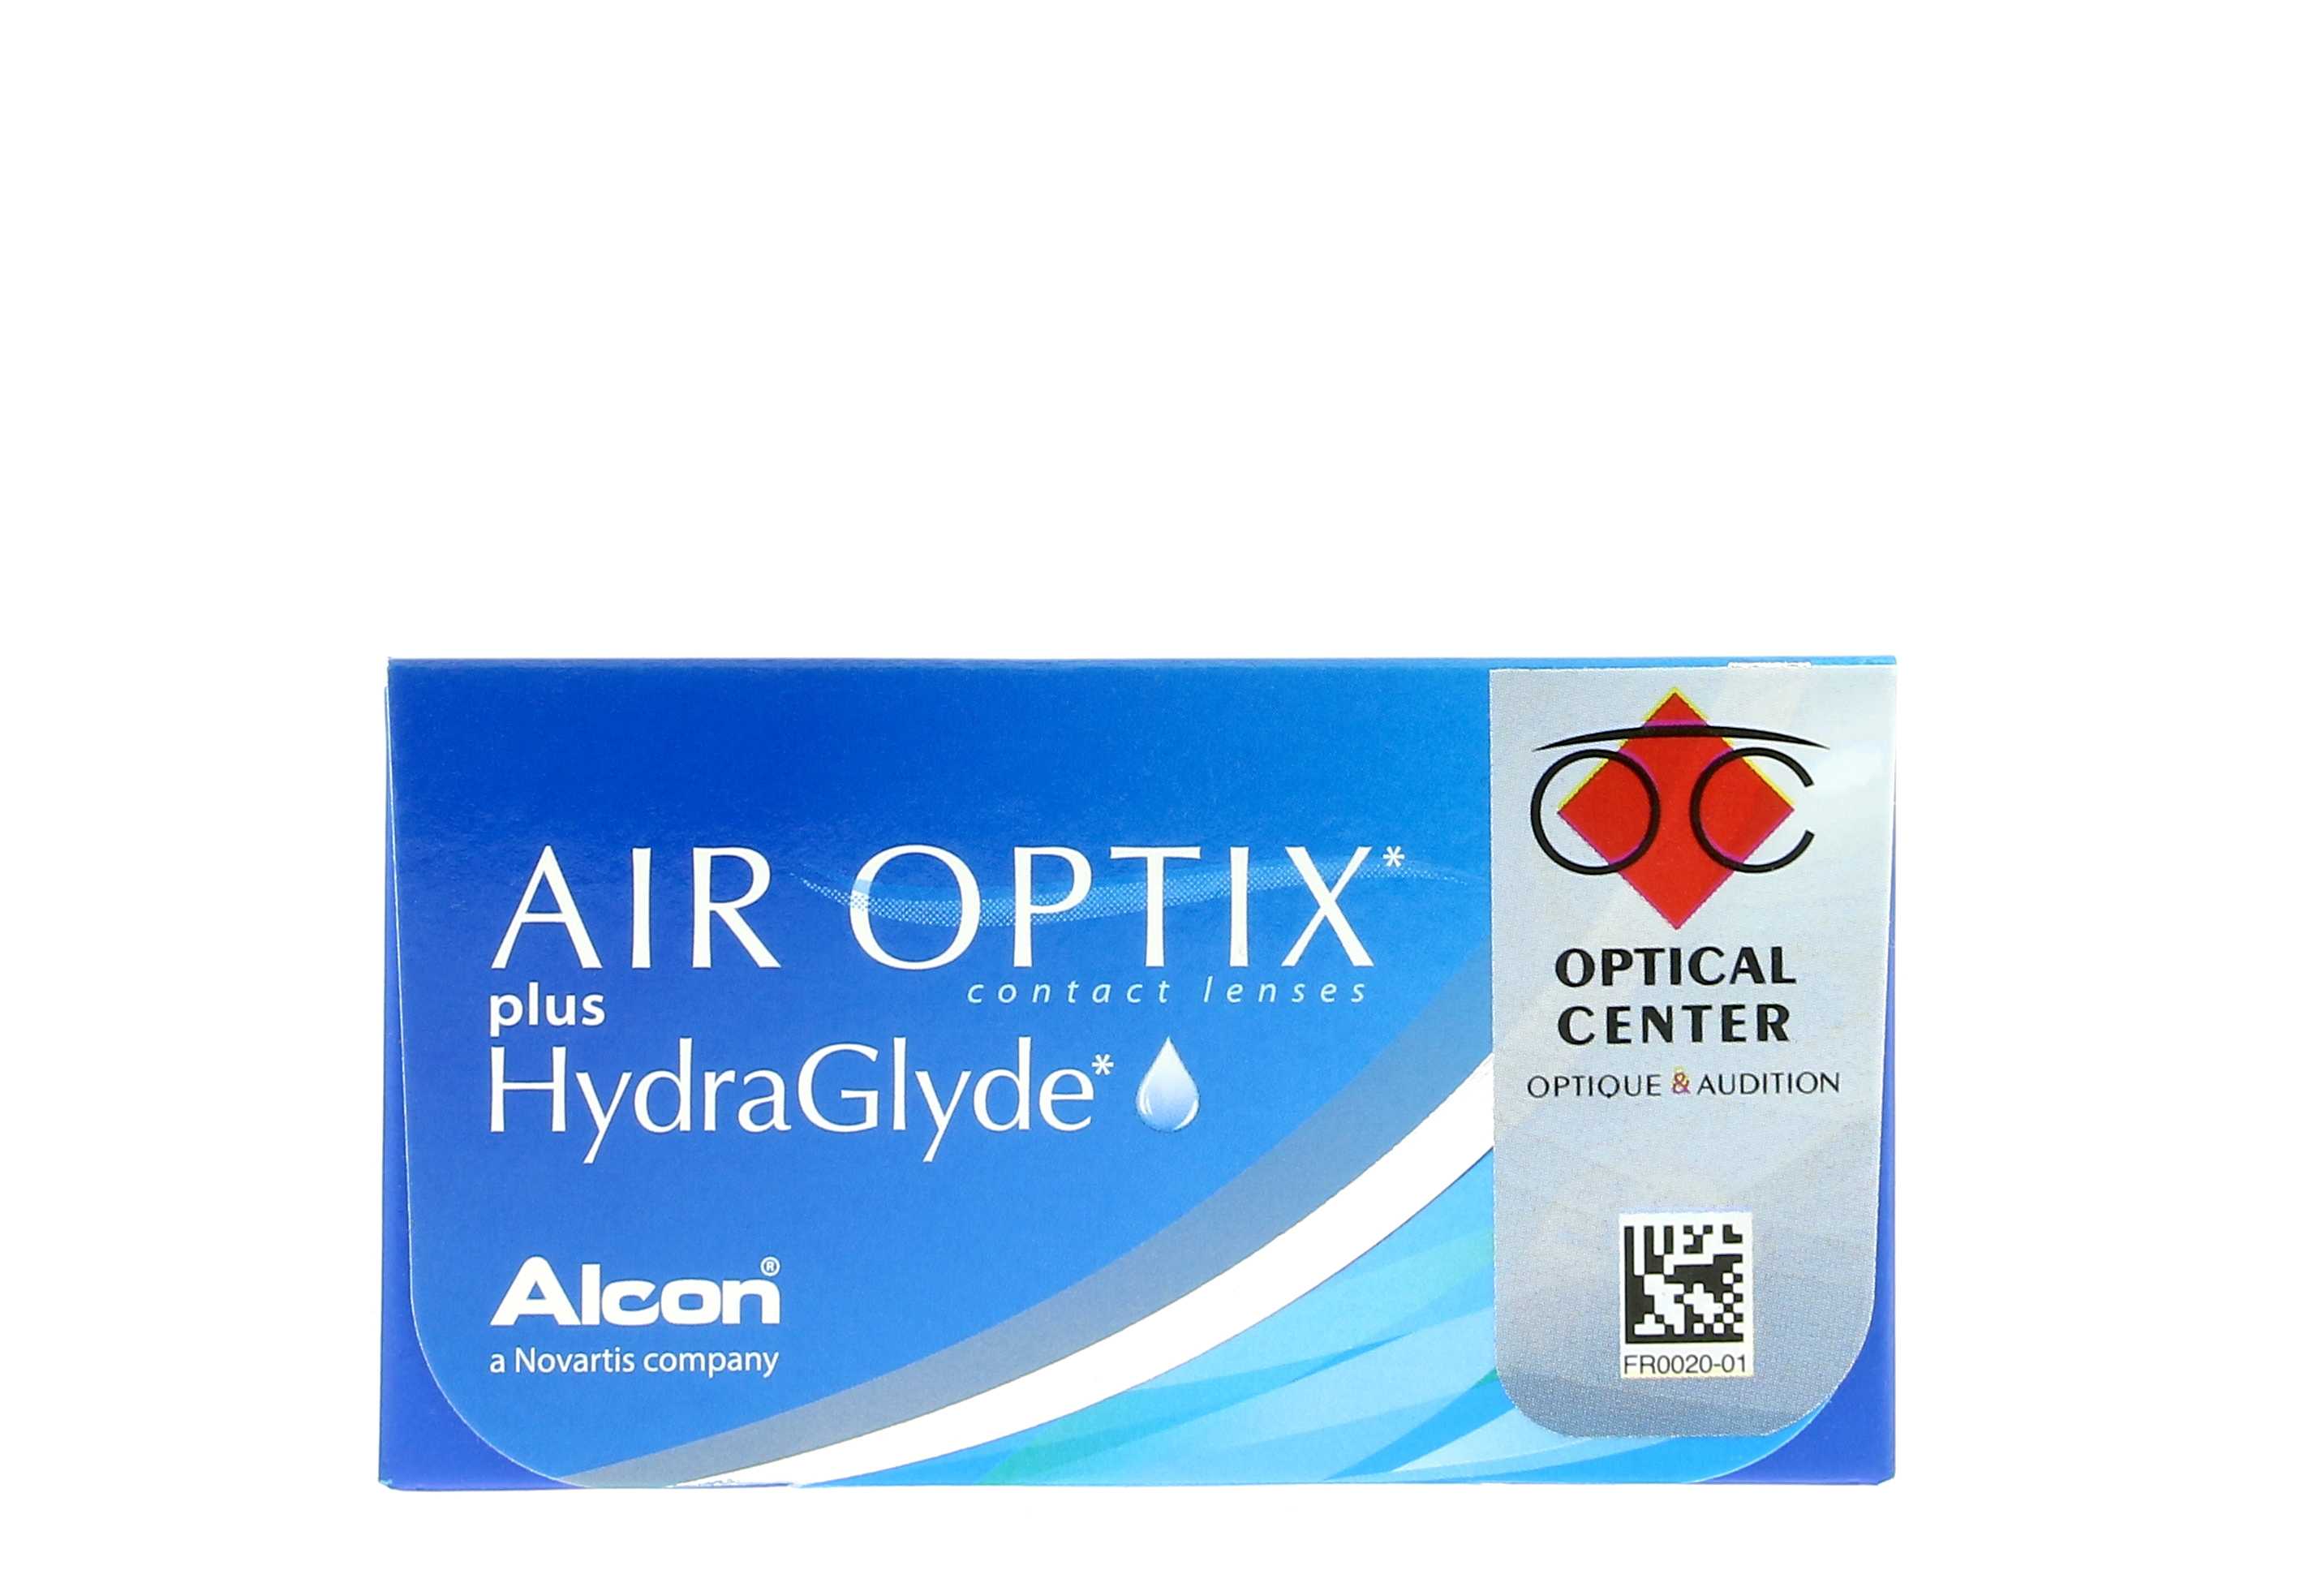  AIR OPTIX AQUA ALCON